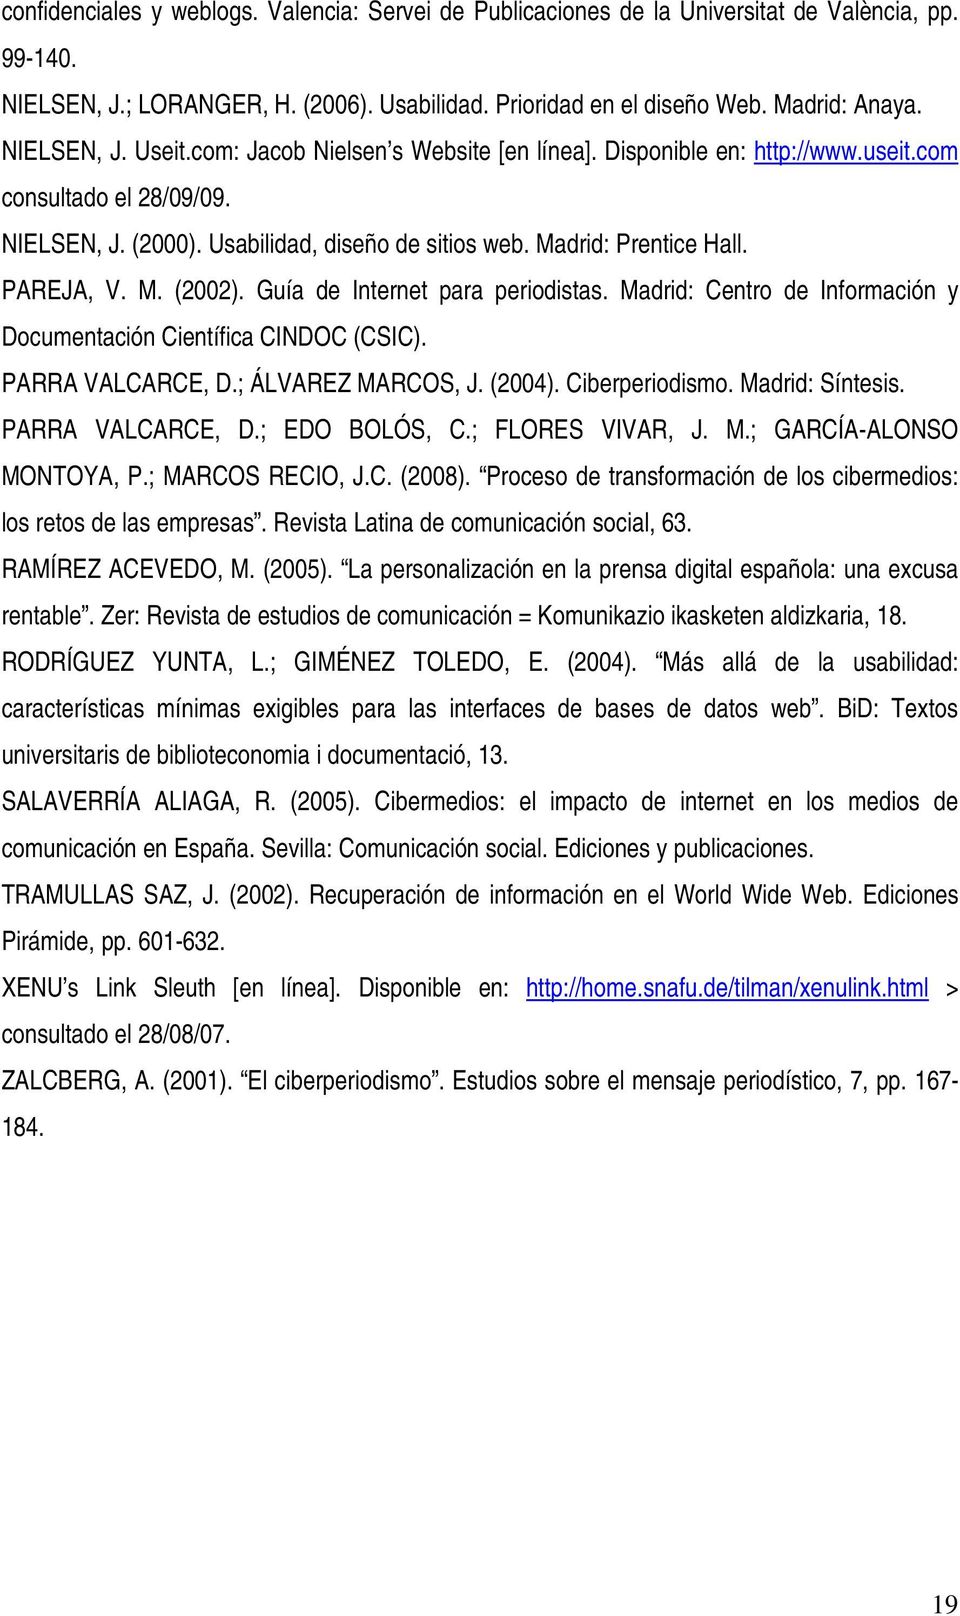 PAREJA, V. M. (2002). Guía de Internet para periodistas. Madrid: Centro de Información y Documentación Científica CINDOC (CSIC). PARRA VALCARCE, D.; ÁLVAREZ MARCOS, J. (2004). Ciberperiodismo.